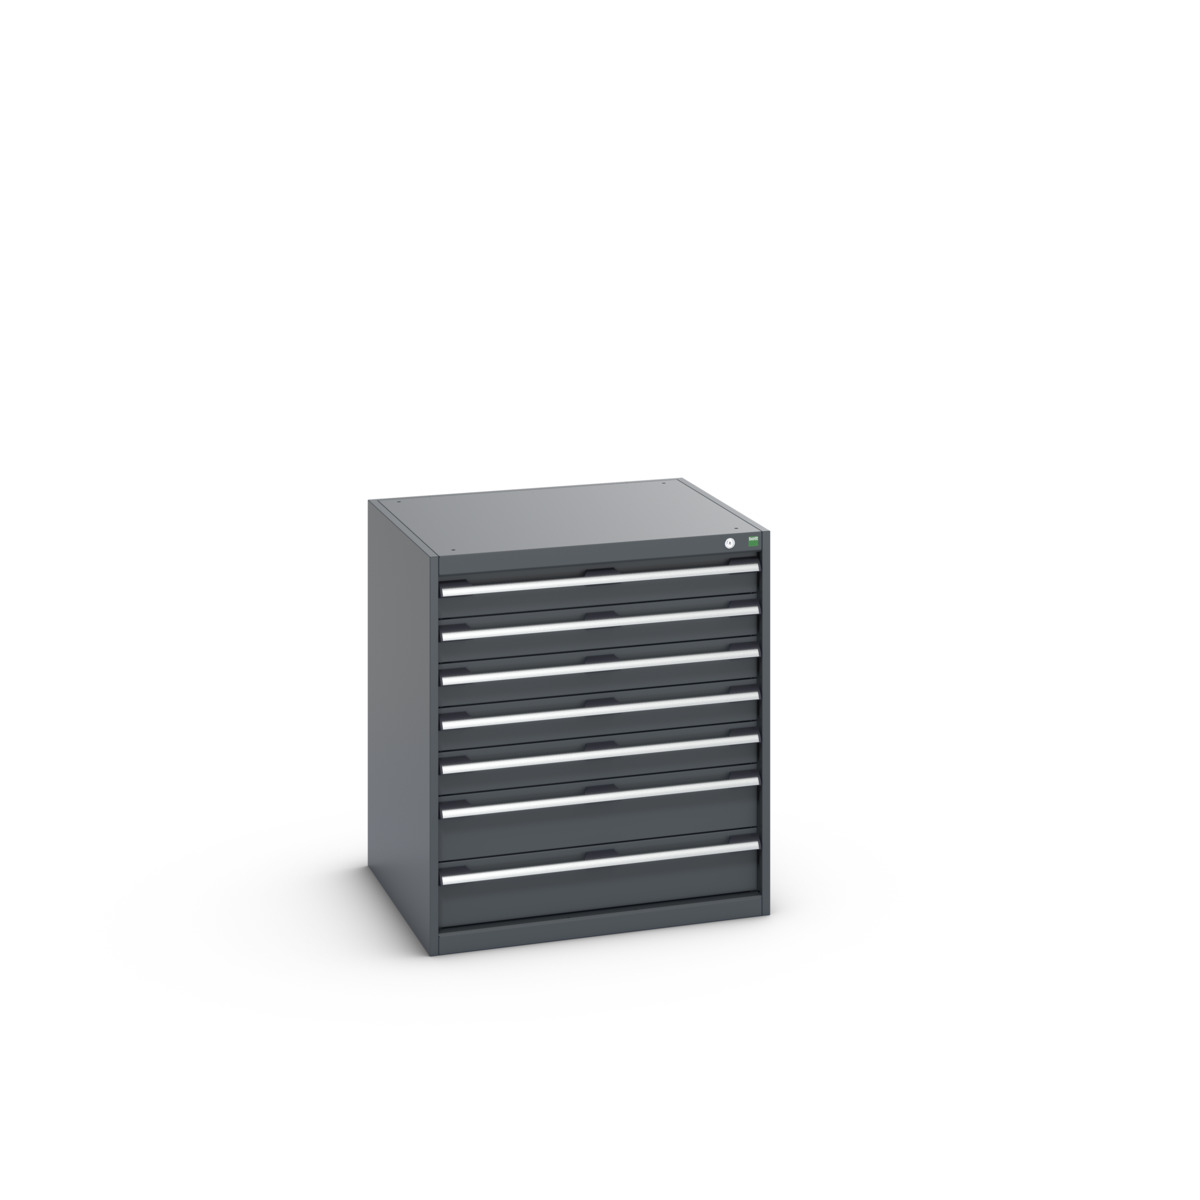 40028108.77V - cubio drawer cabinet